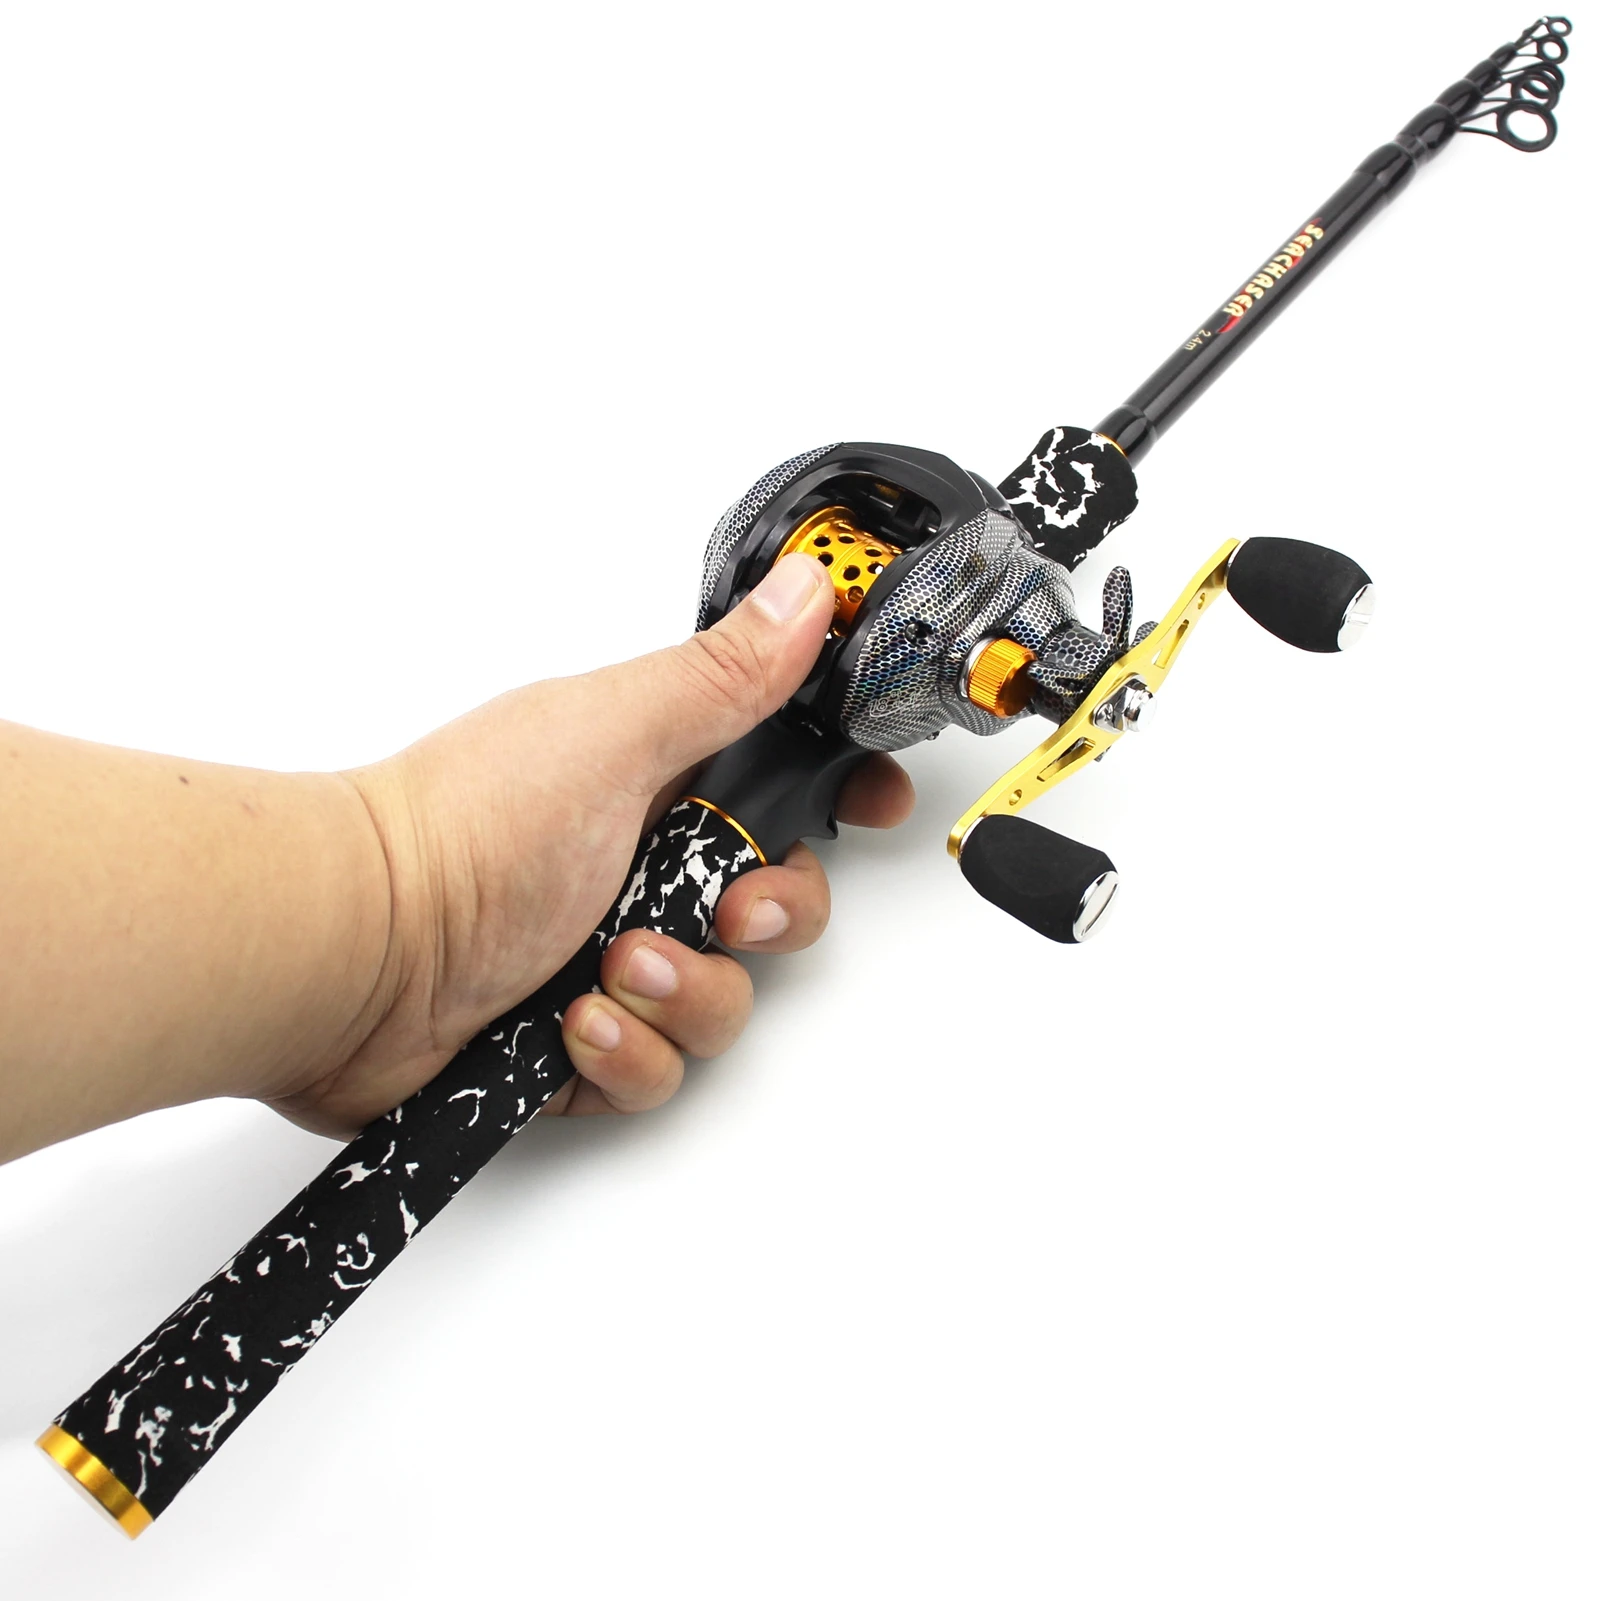 1.8m2.1m2.4m2.7m Carbon Fiber Casting Fishing Rod Portable